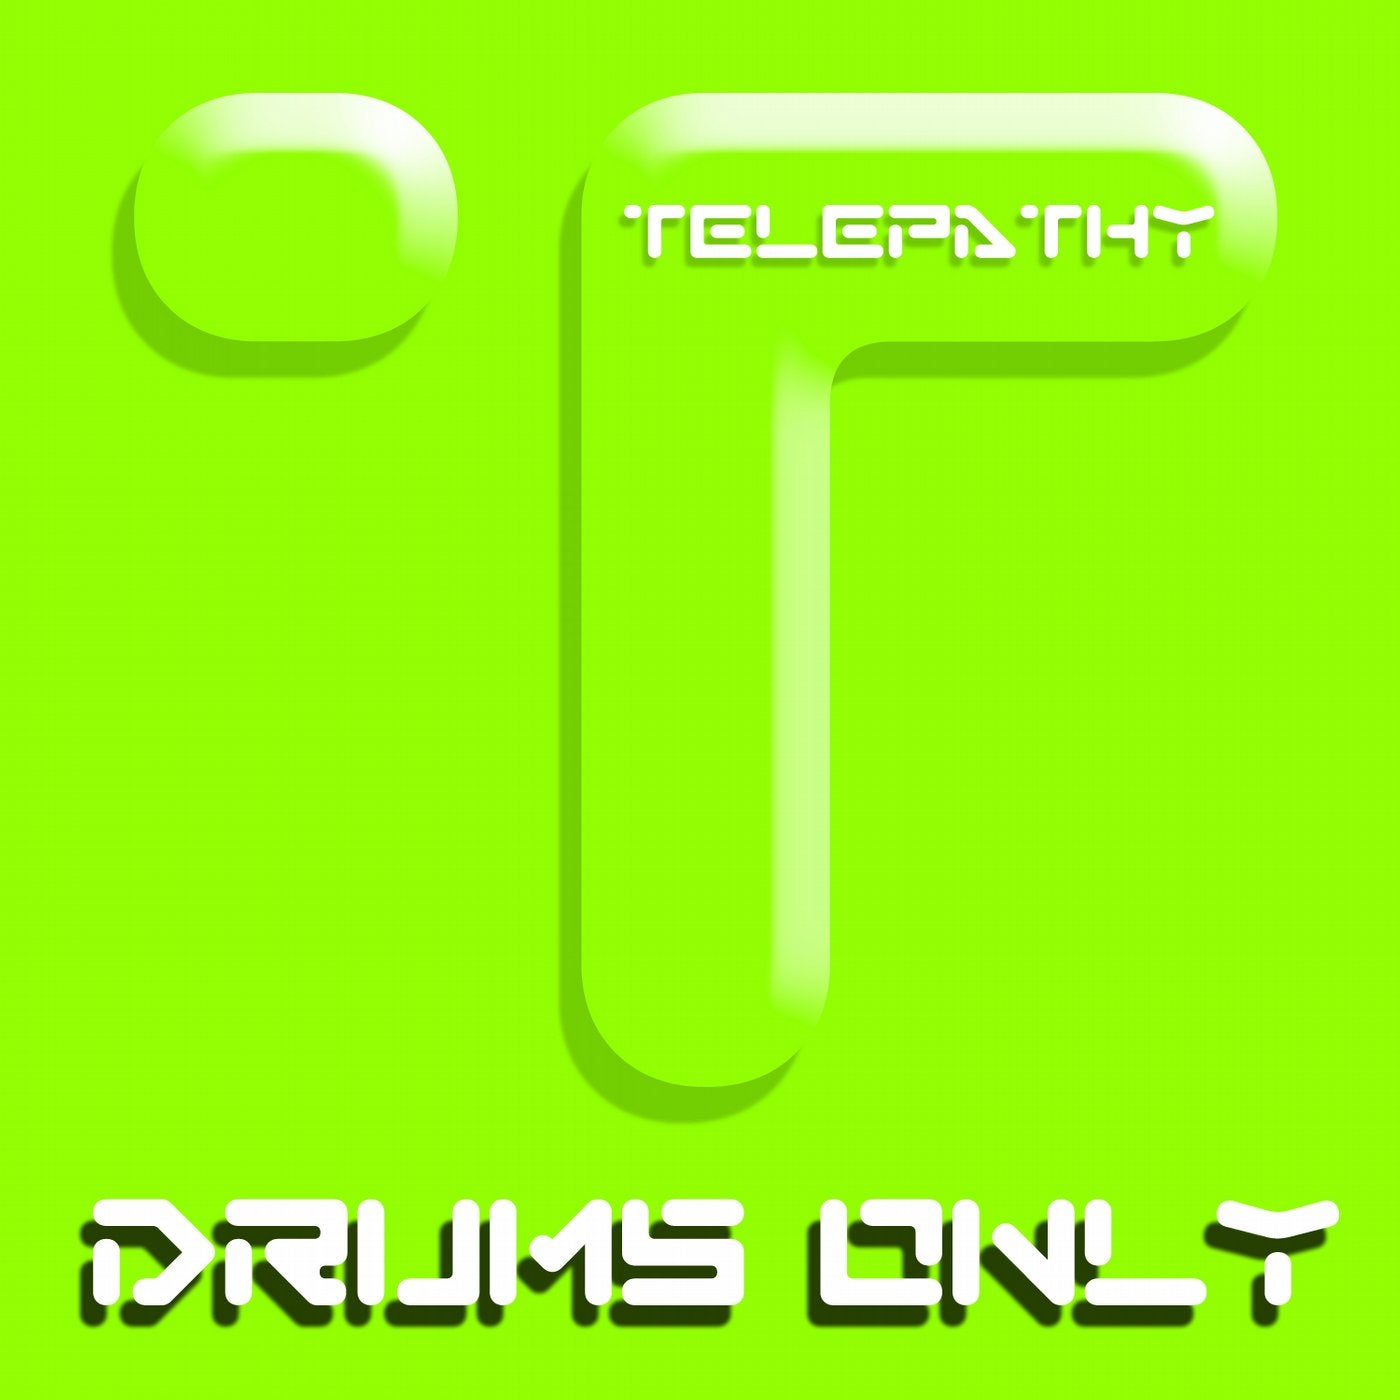 Beats Drums & Percussion Vol 9